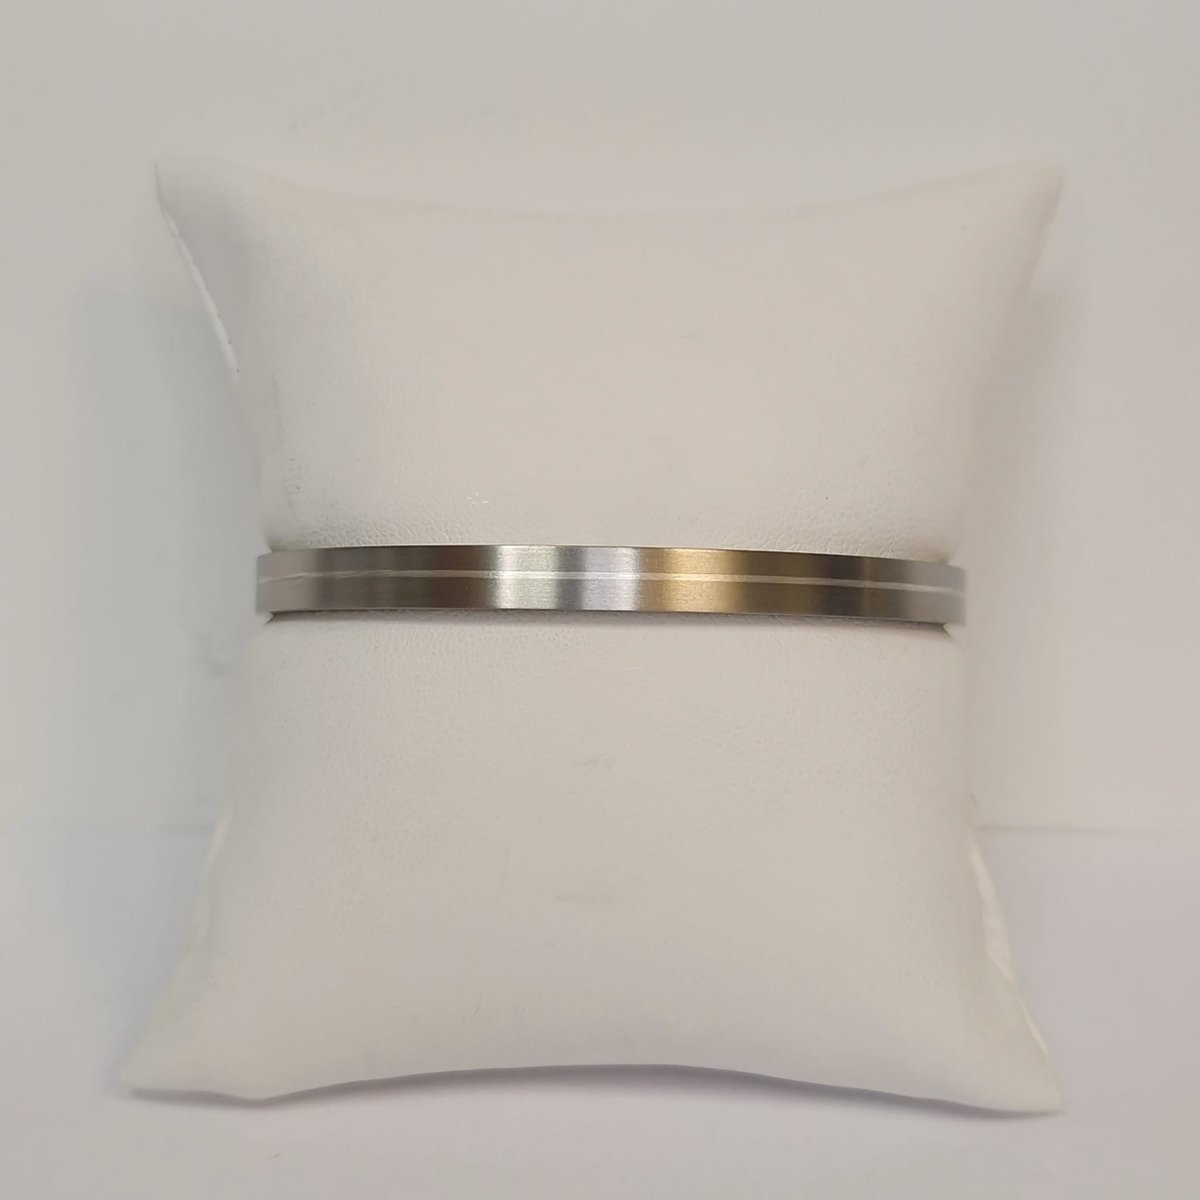 Titaan met zilveren armband - klemarmband - 925dz zilver - sale Juwelier Verlinden St. Hubert - van €287,- voor €170,-